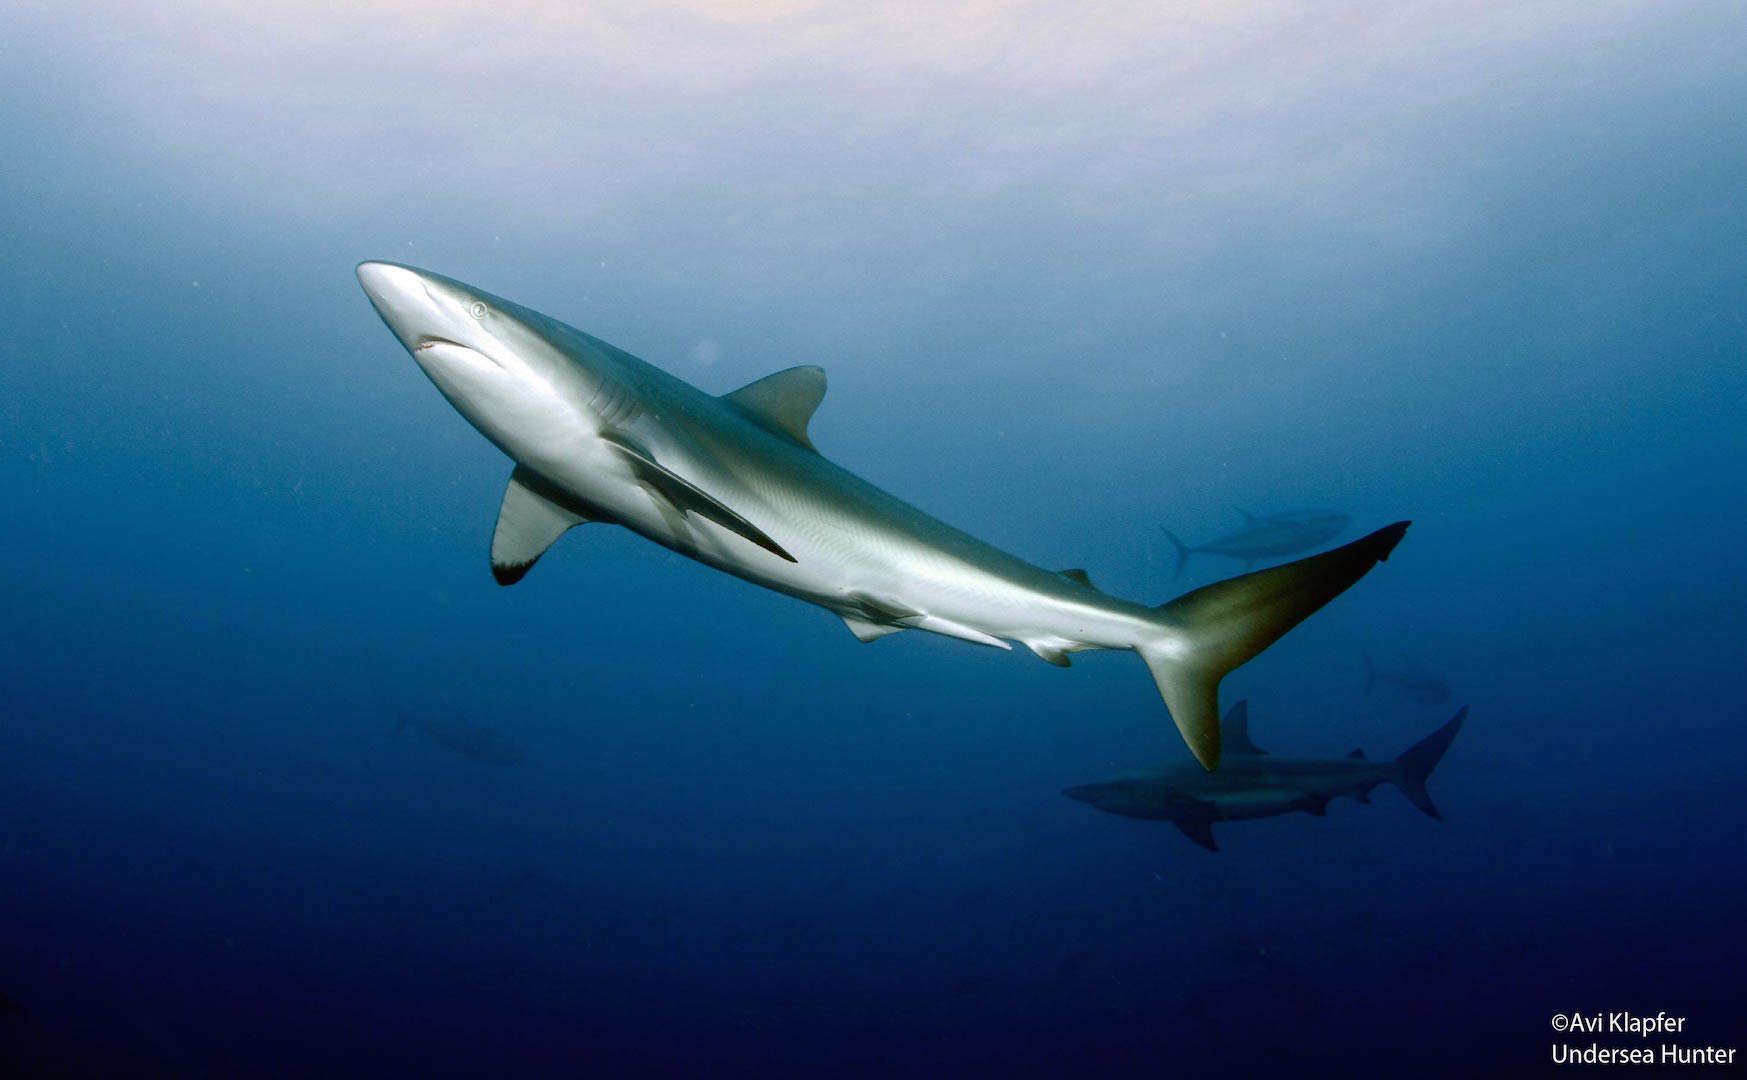 Costa Rica shark conservation